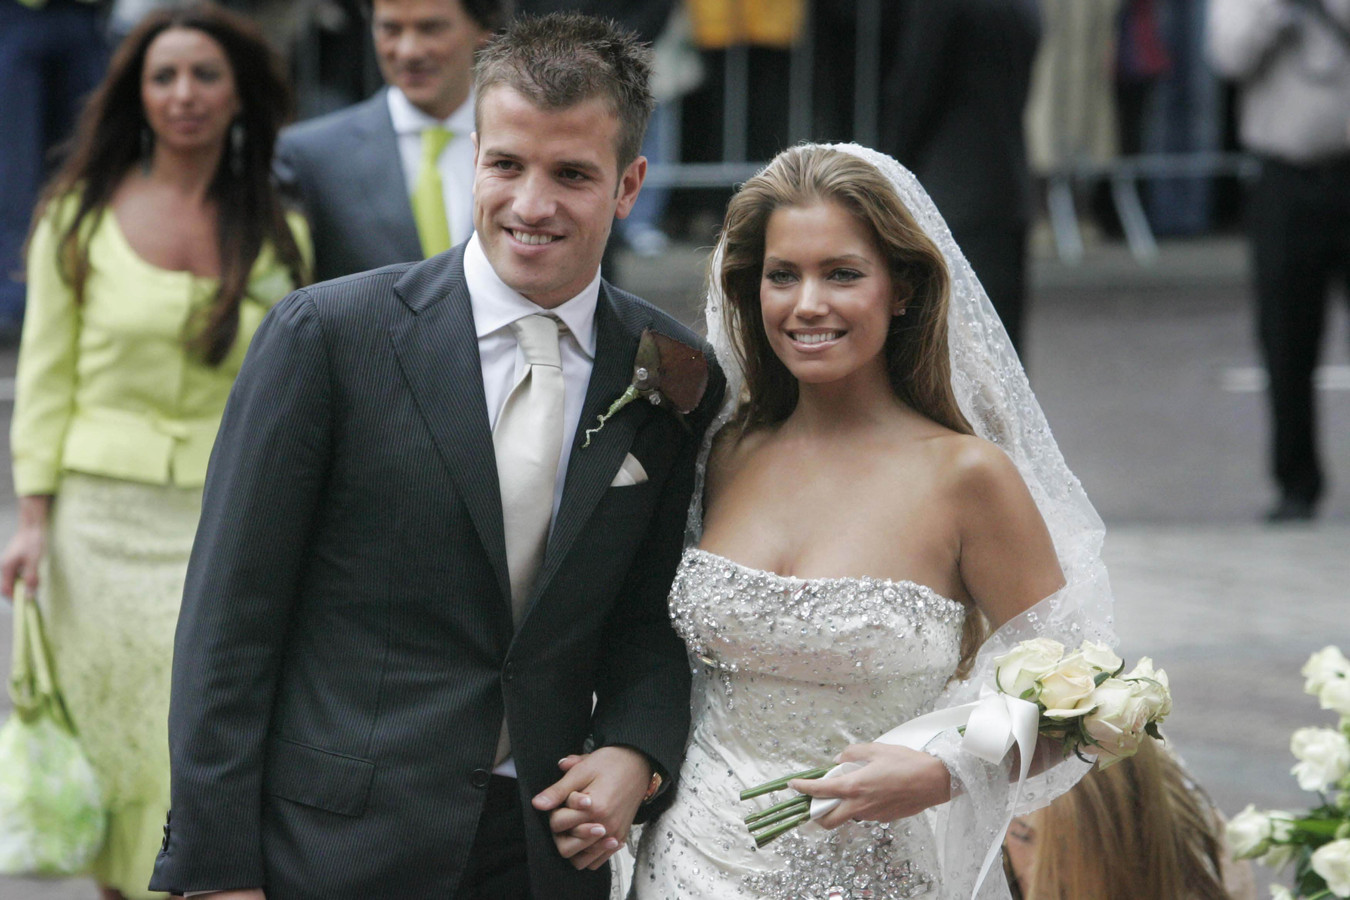 Sylvie Meis en voetballer Rafael van der Vaart trouwden op 10 juni 2005 in Heemskerk.